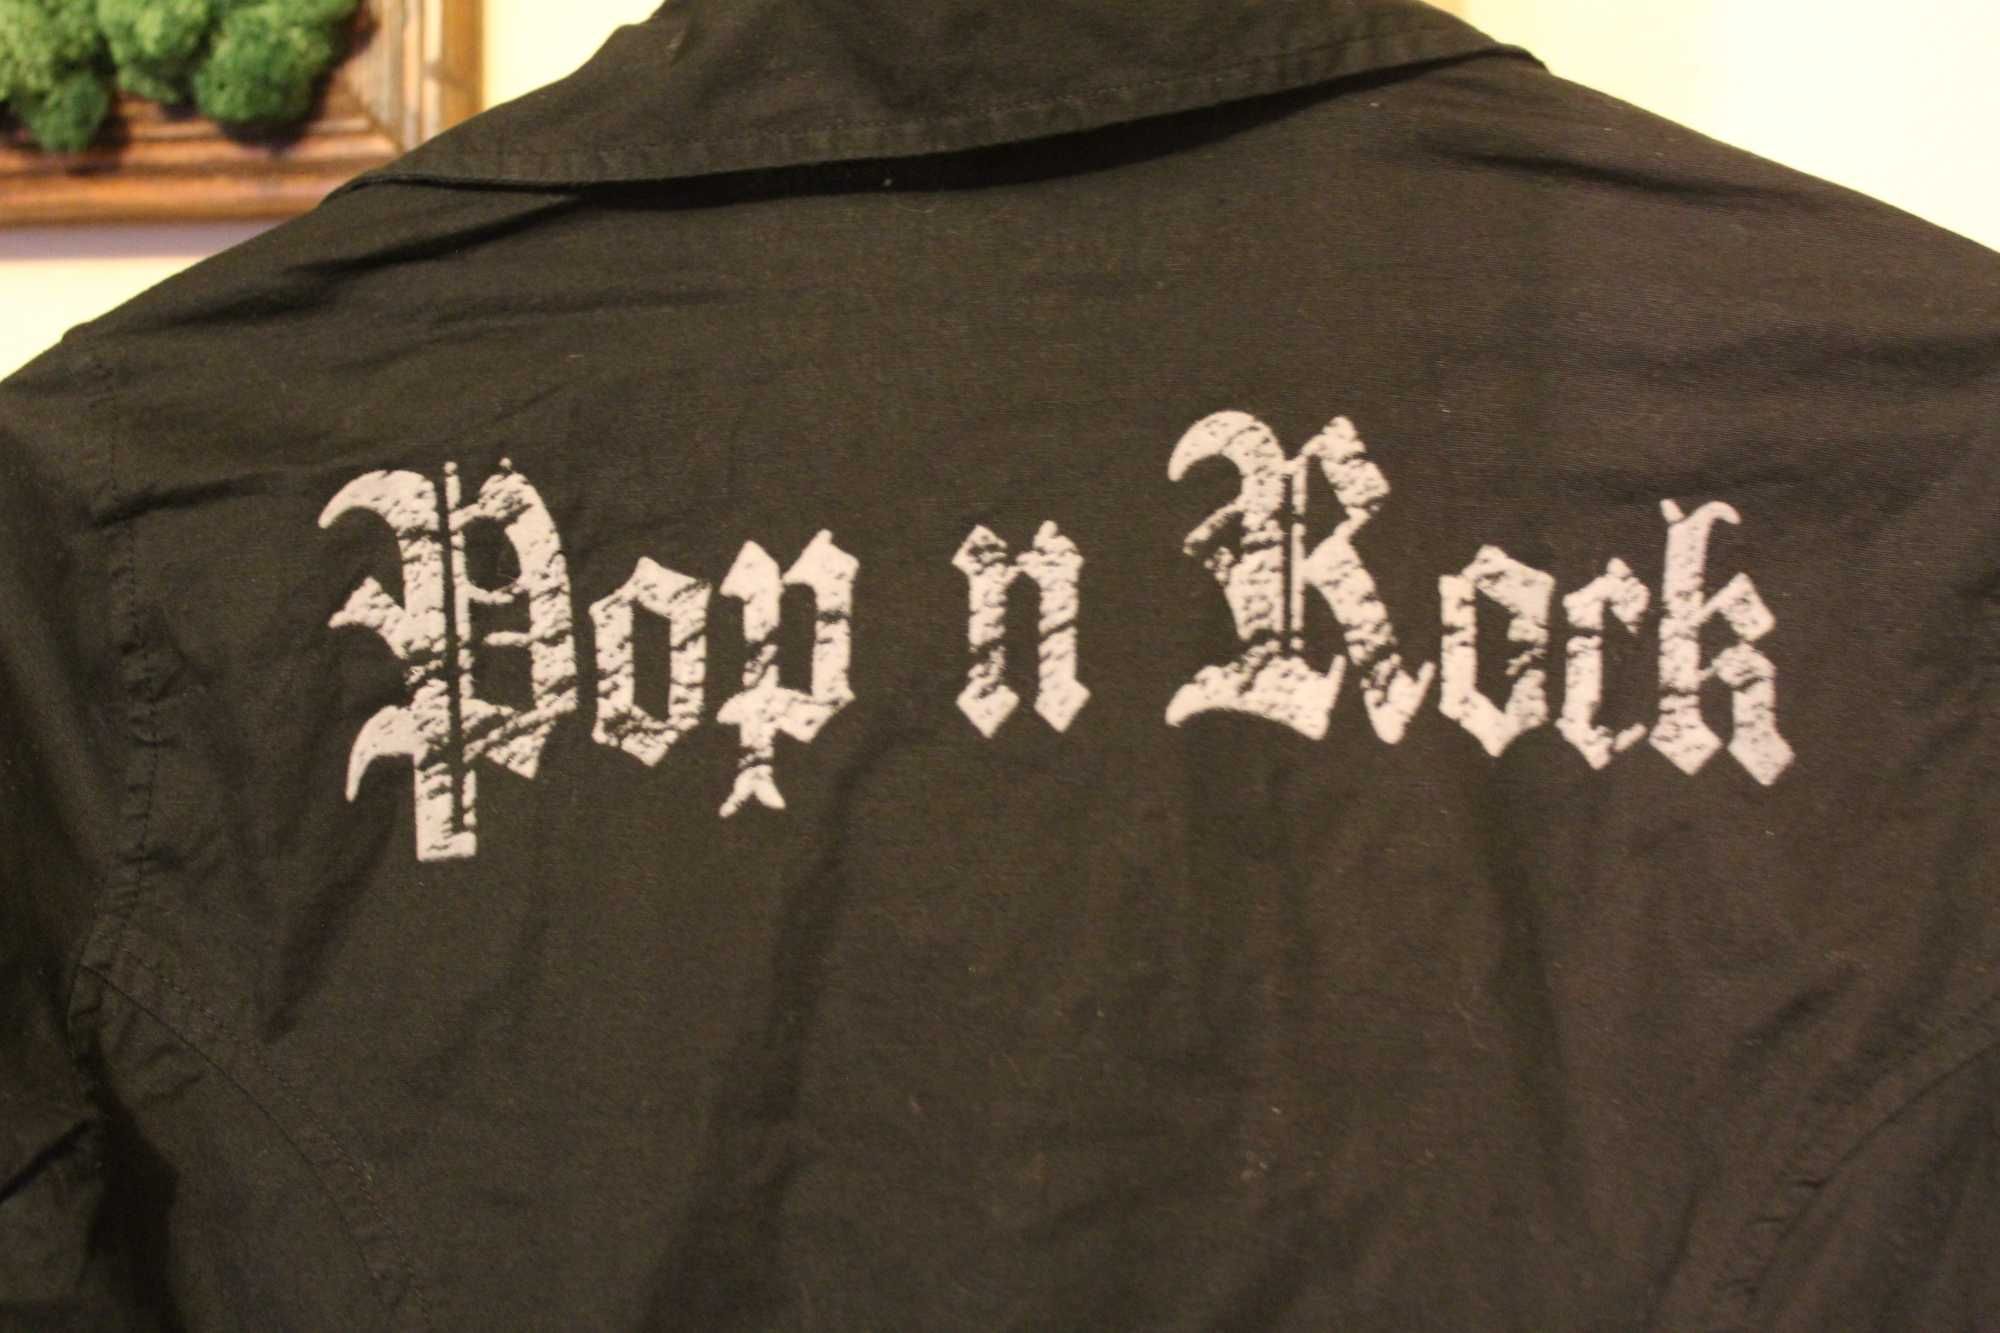 Czarna koszula z napisem Pop & Rock